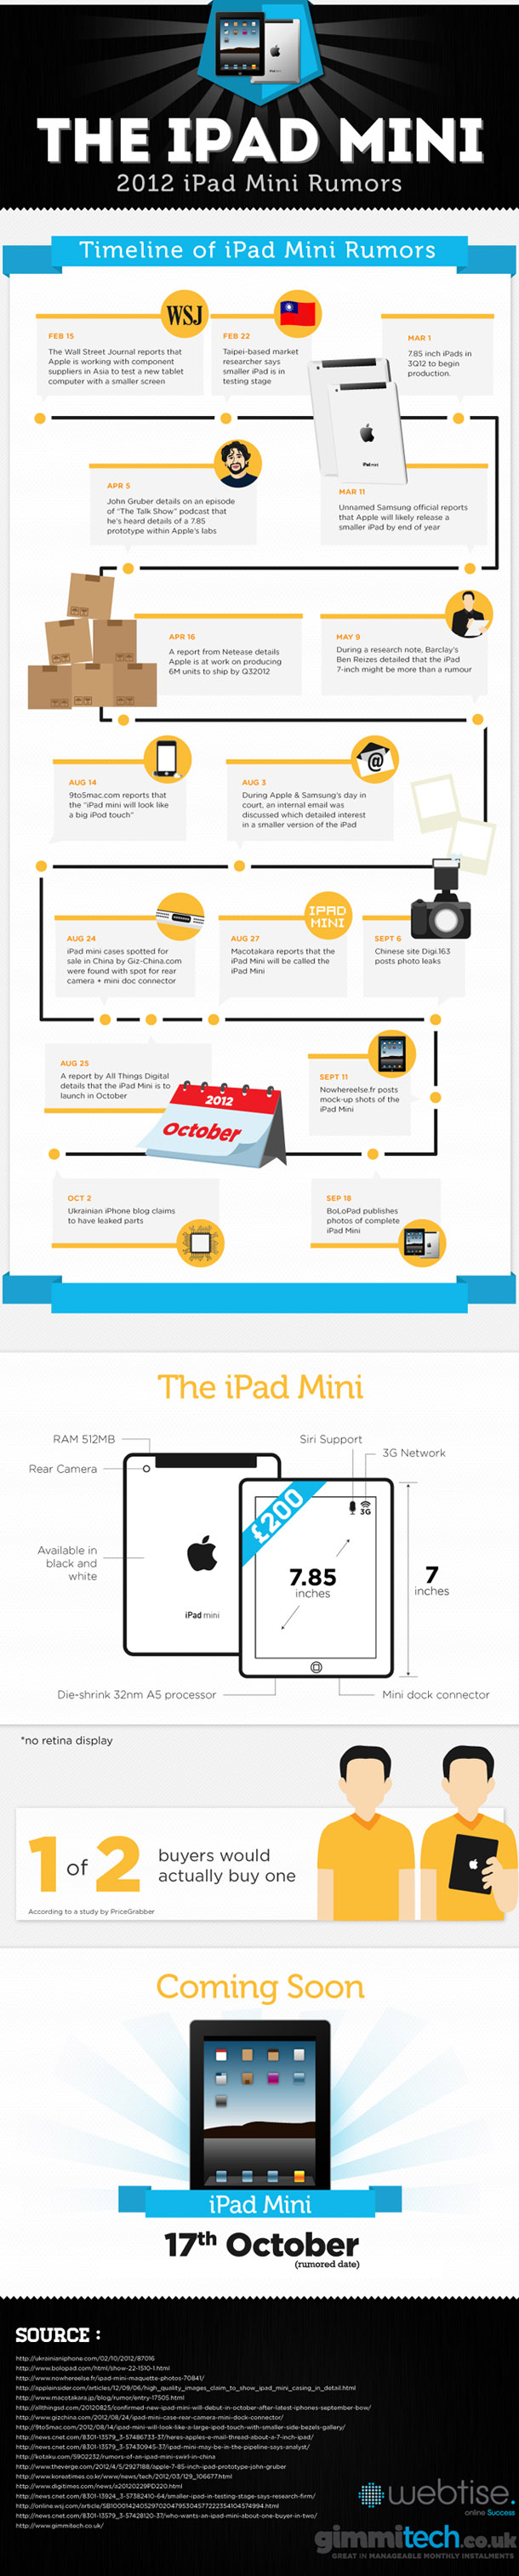 #iPadMini - Toutes les rumeurs en 1 image [infographie]